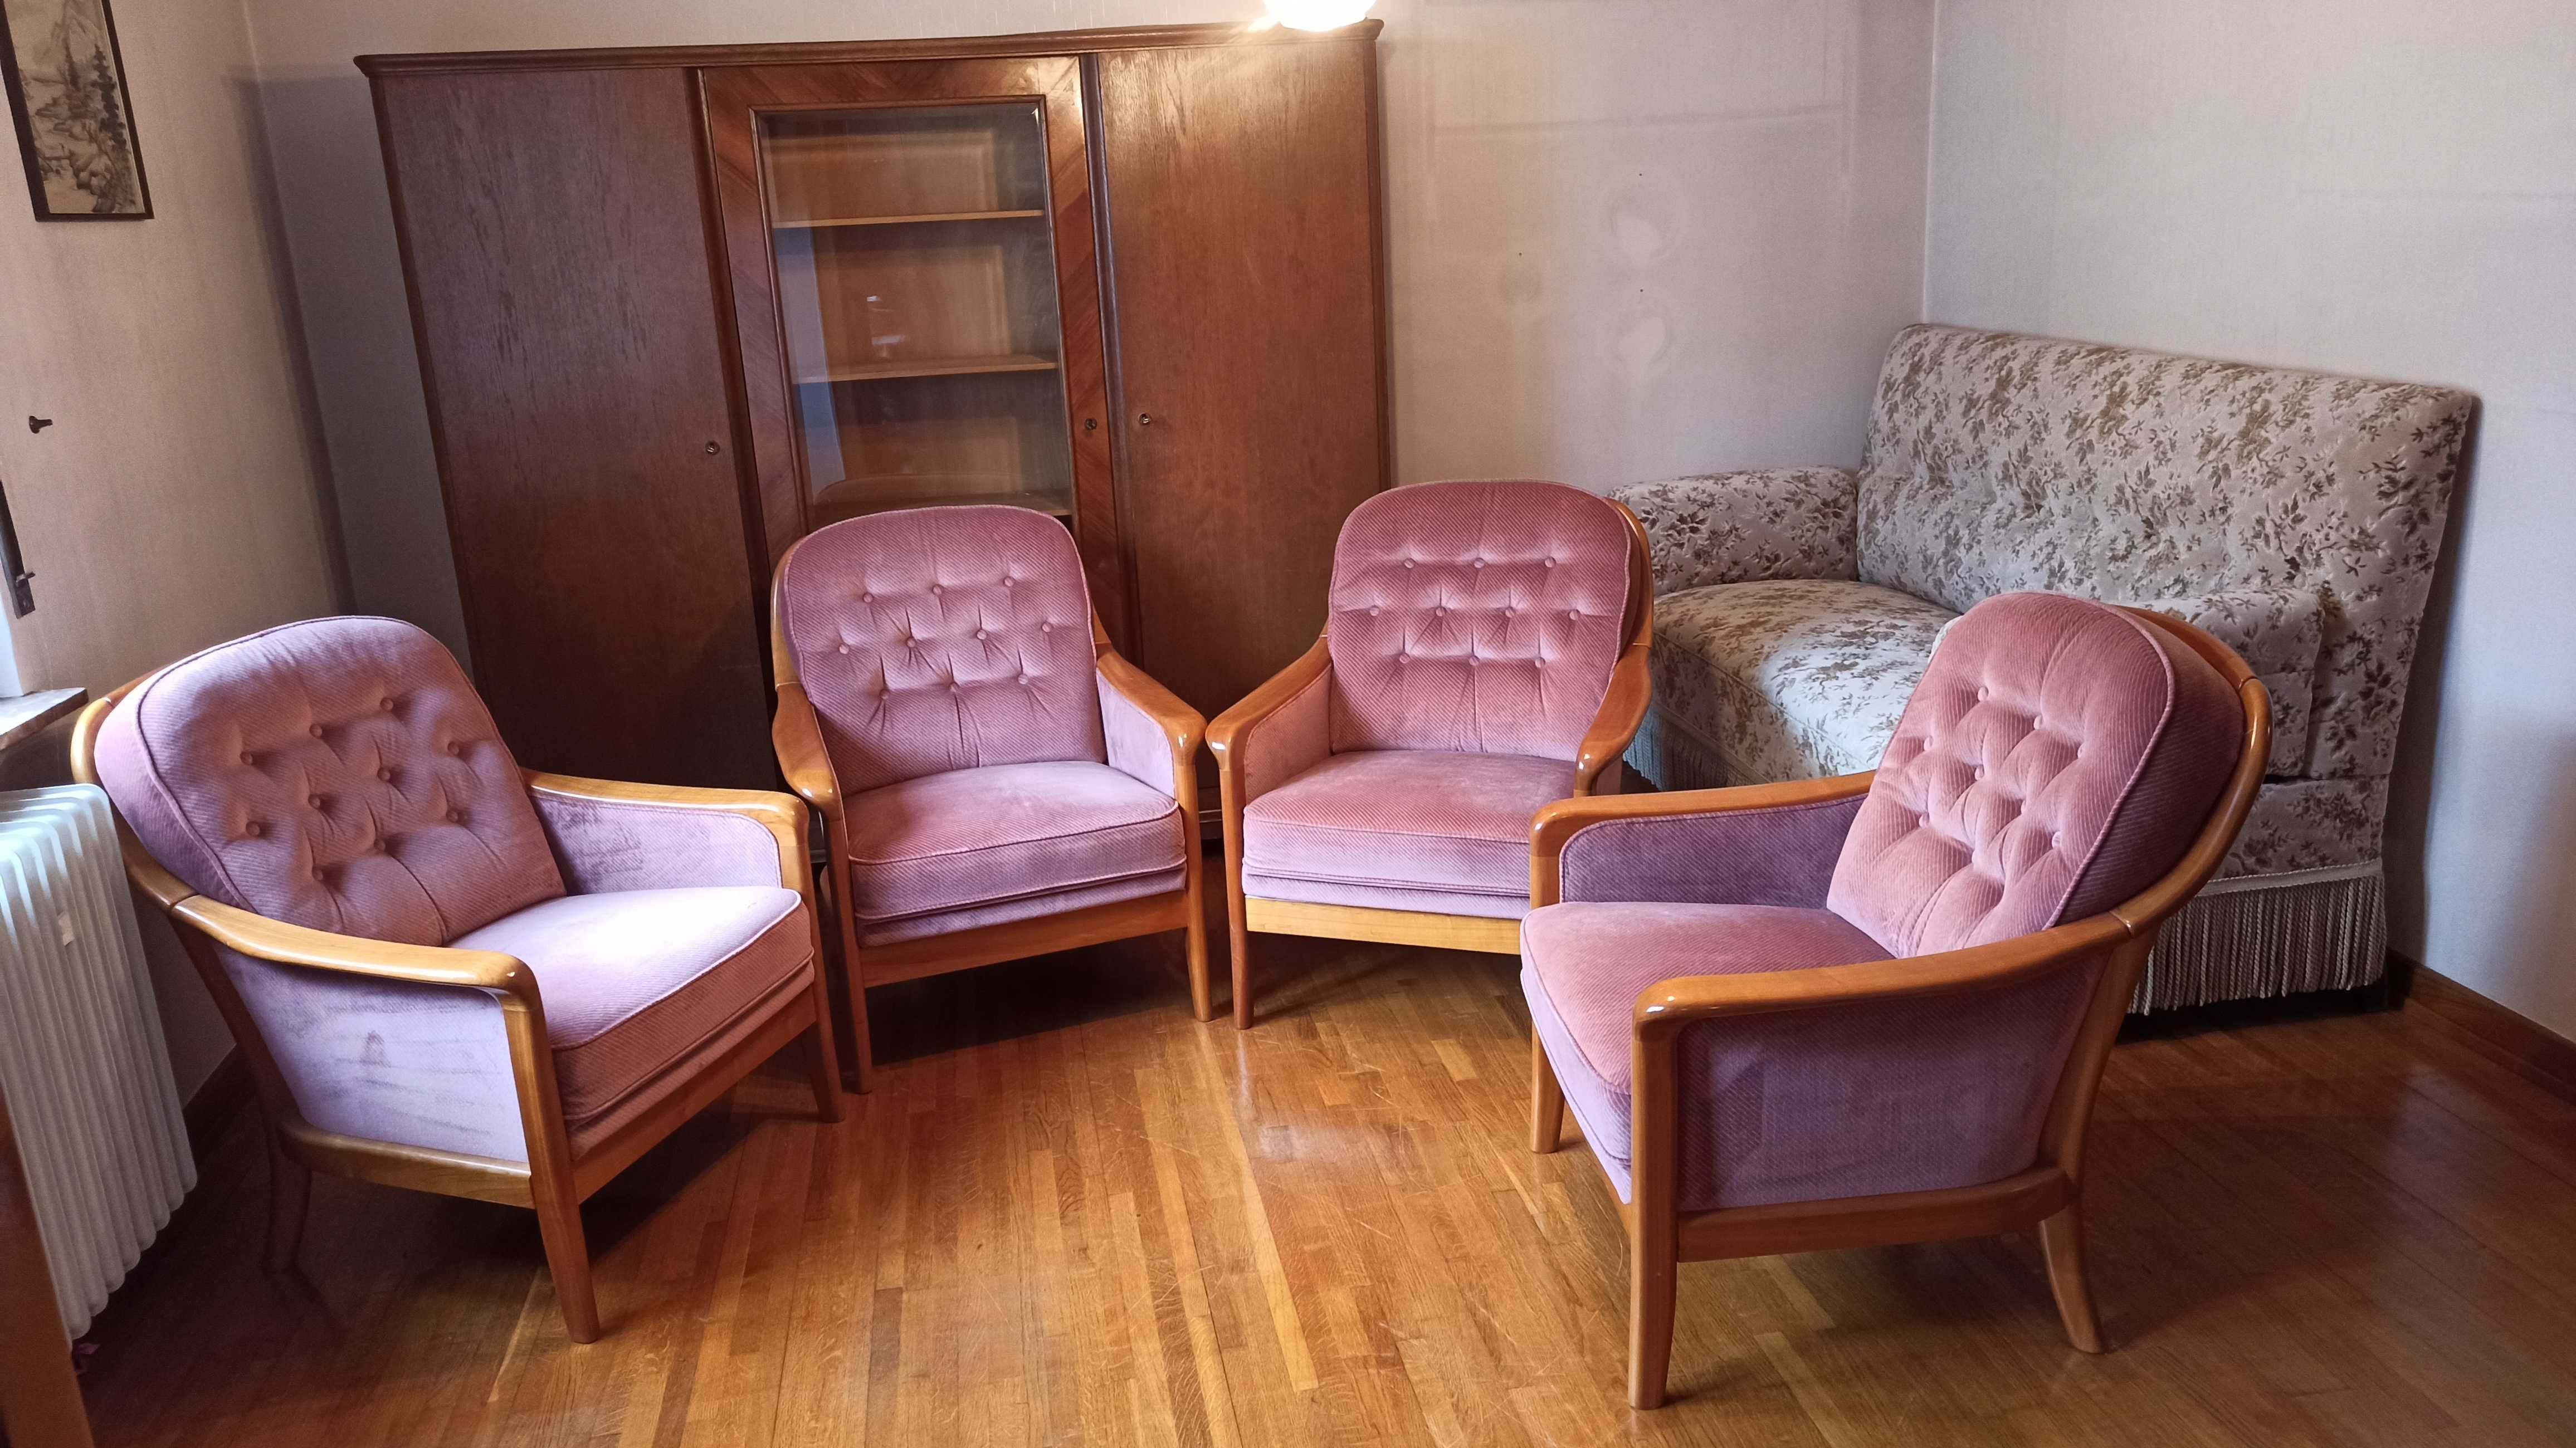 4 Fotele  vintage Môbel Walther